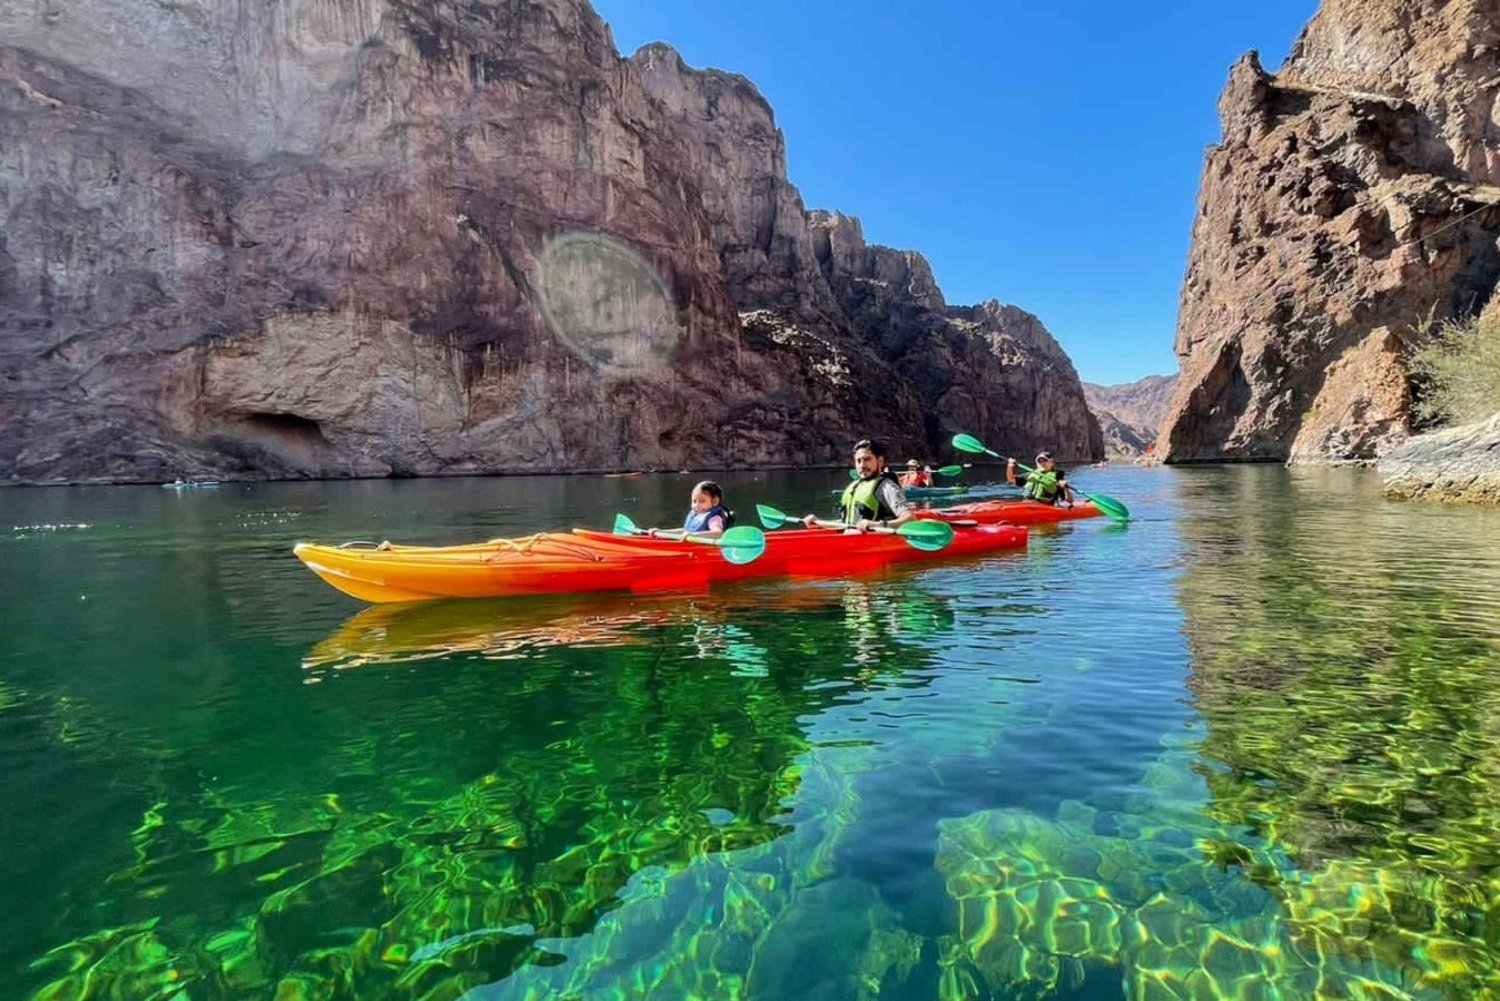 Da Las Vegas: Tour della Grotta di Smeraldo in kayak